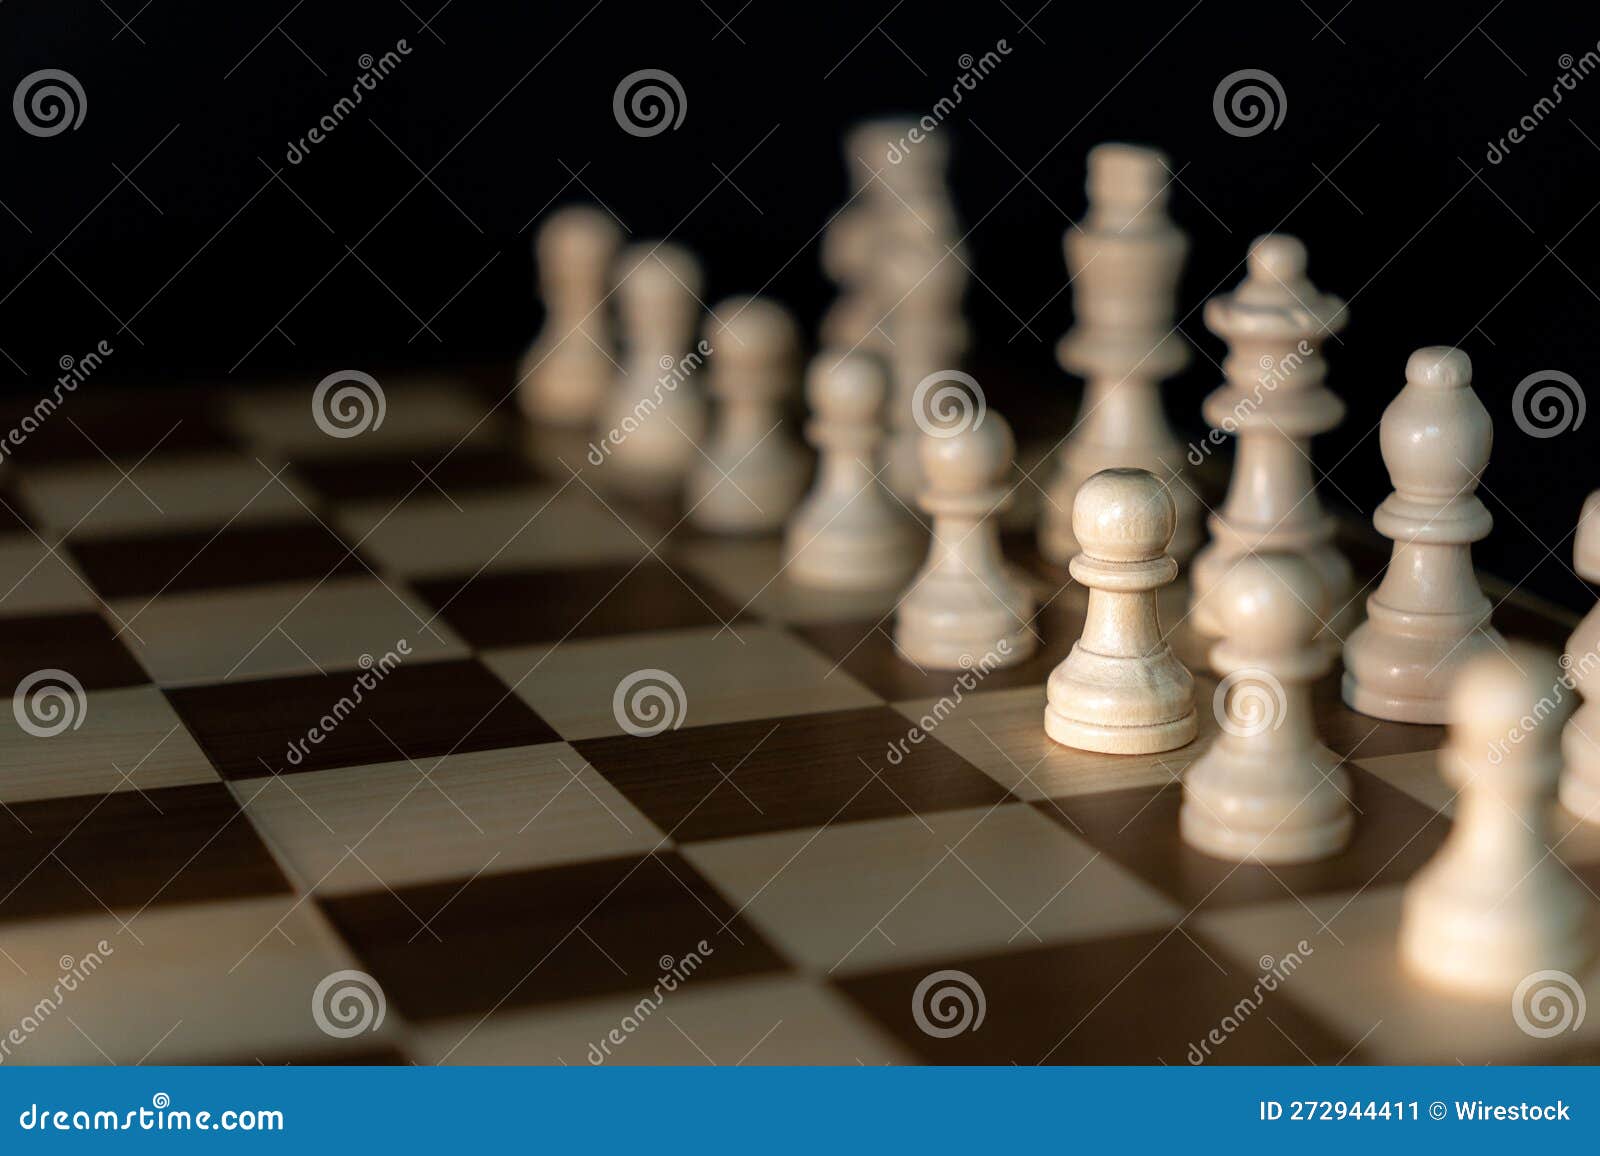 Armação De Um Tabuleiro De Xadrez Instalado Na Sua Posição Inicial Com Peças  De Xadrez Brancas Clássicas Imagem de Stock - Imagem de branco, marfim:  272944411